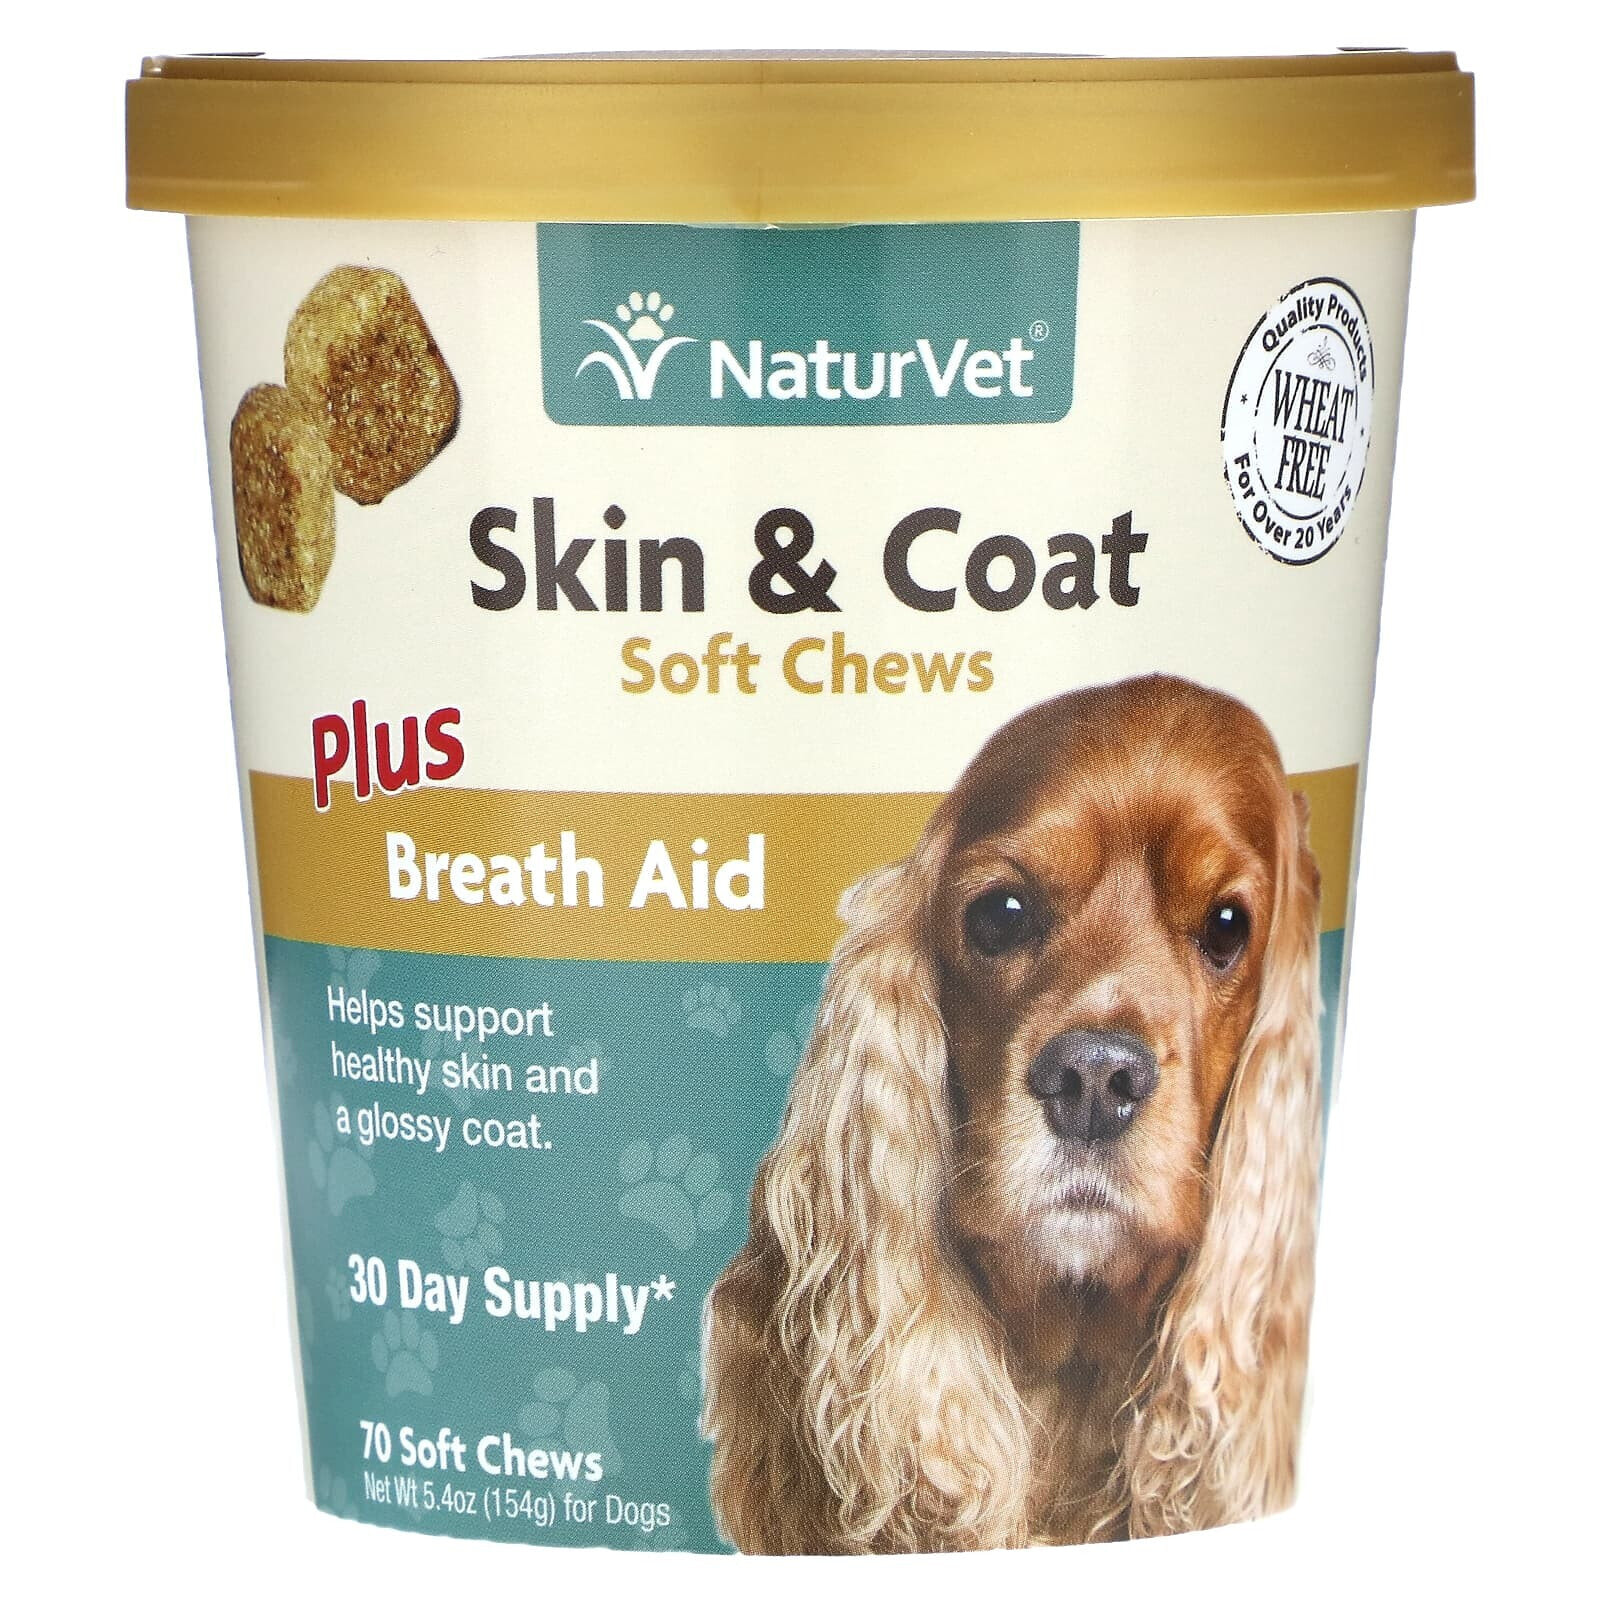 Skin & Coat Plus Breath Aid, For Dogs, 70 Soft Chews, 5.4 oz (154 g)